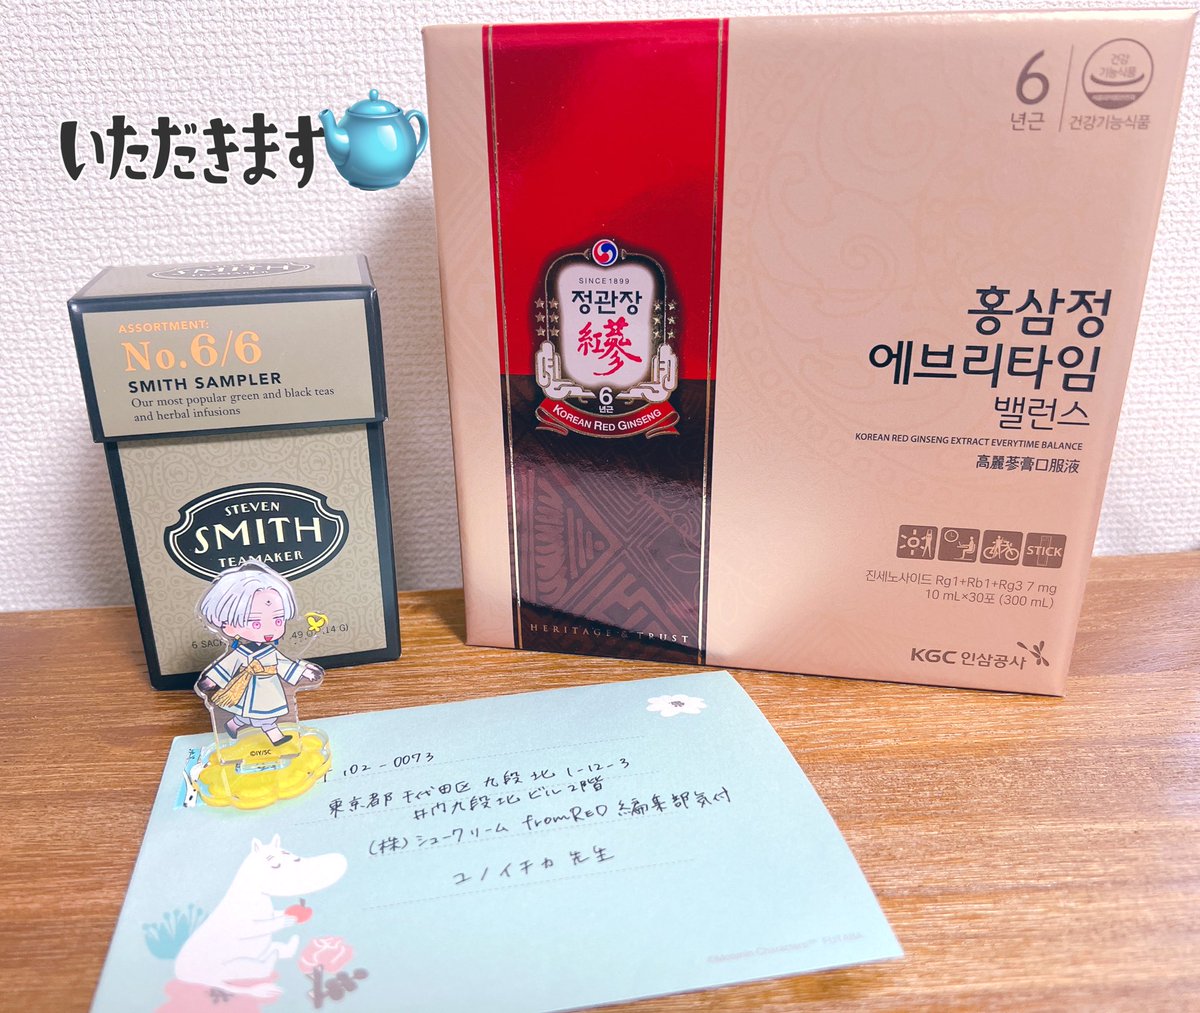 お手紙&プレゼント受けとりました🎁ありがとうございます!韓国の出版社から頂いたお茶!どんな味がするんだワクワク🫖アルトへの誕プレもありがとうございます良かったねアルト(各画像ALTに追加コメントしておきました🙌)